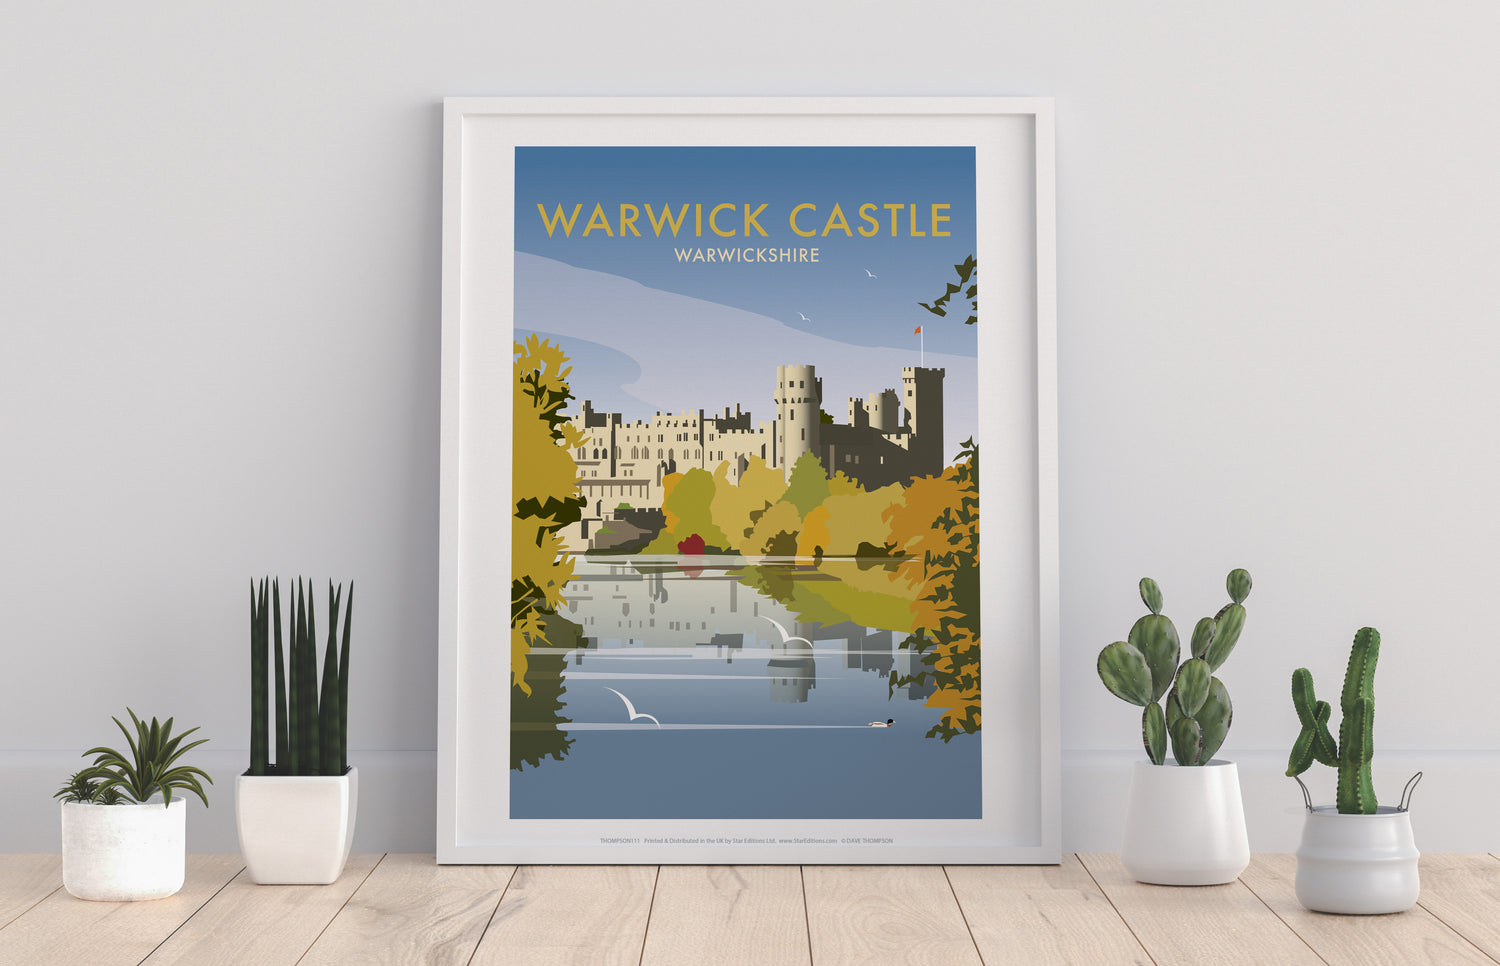 Warwick Castle - Art Print